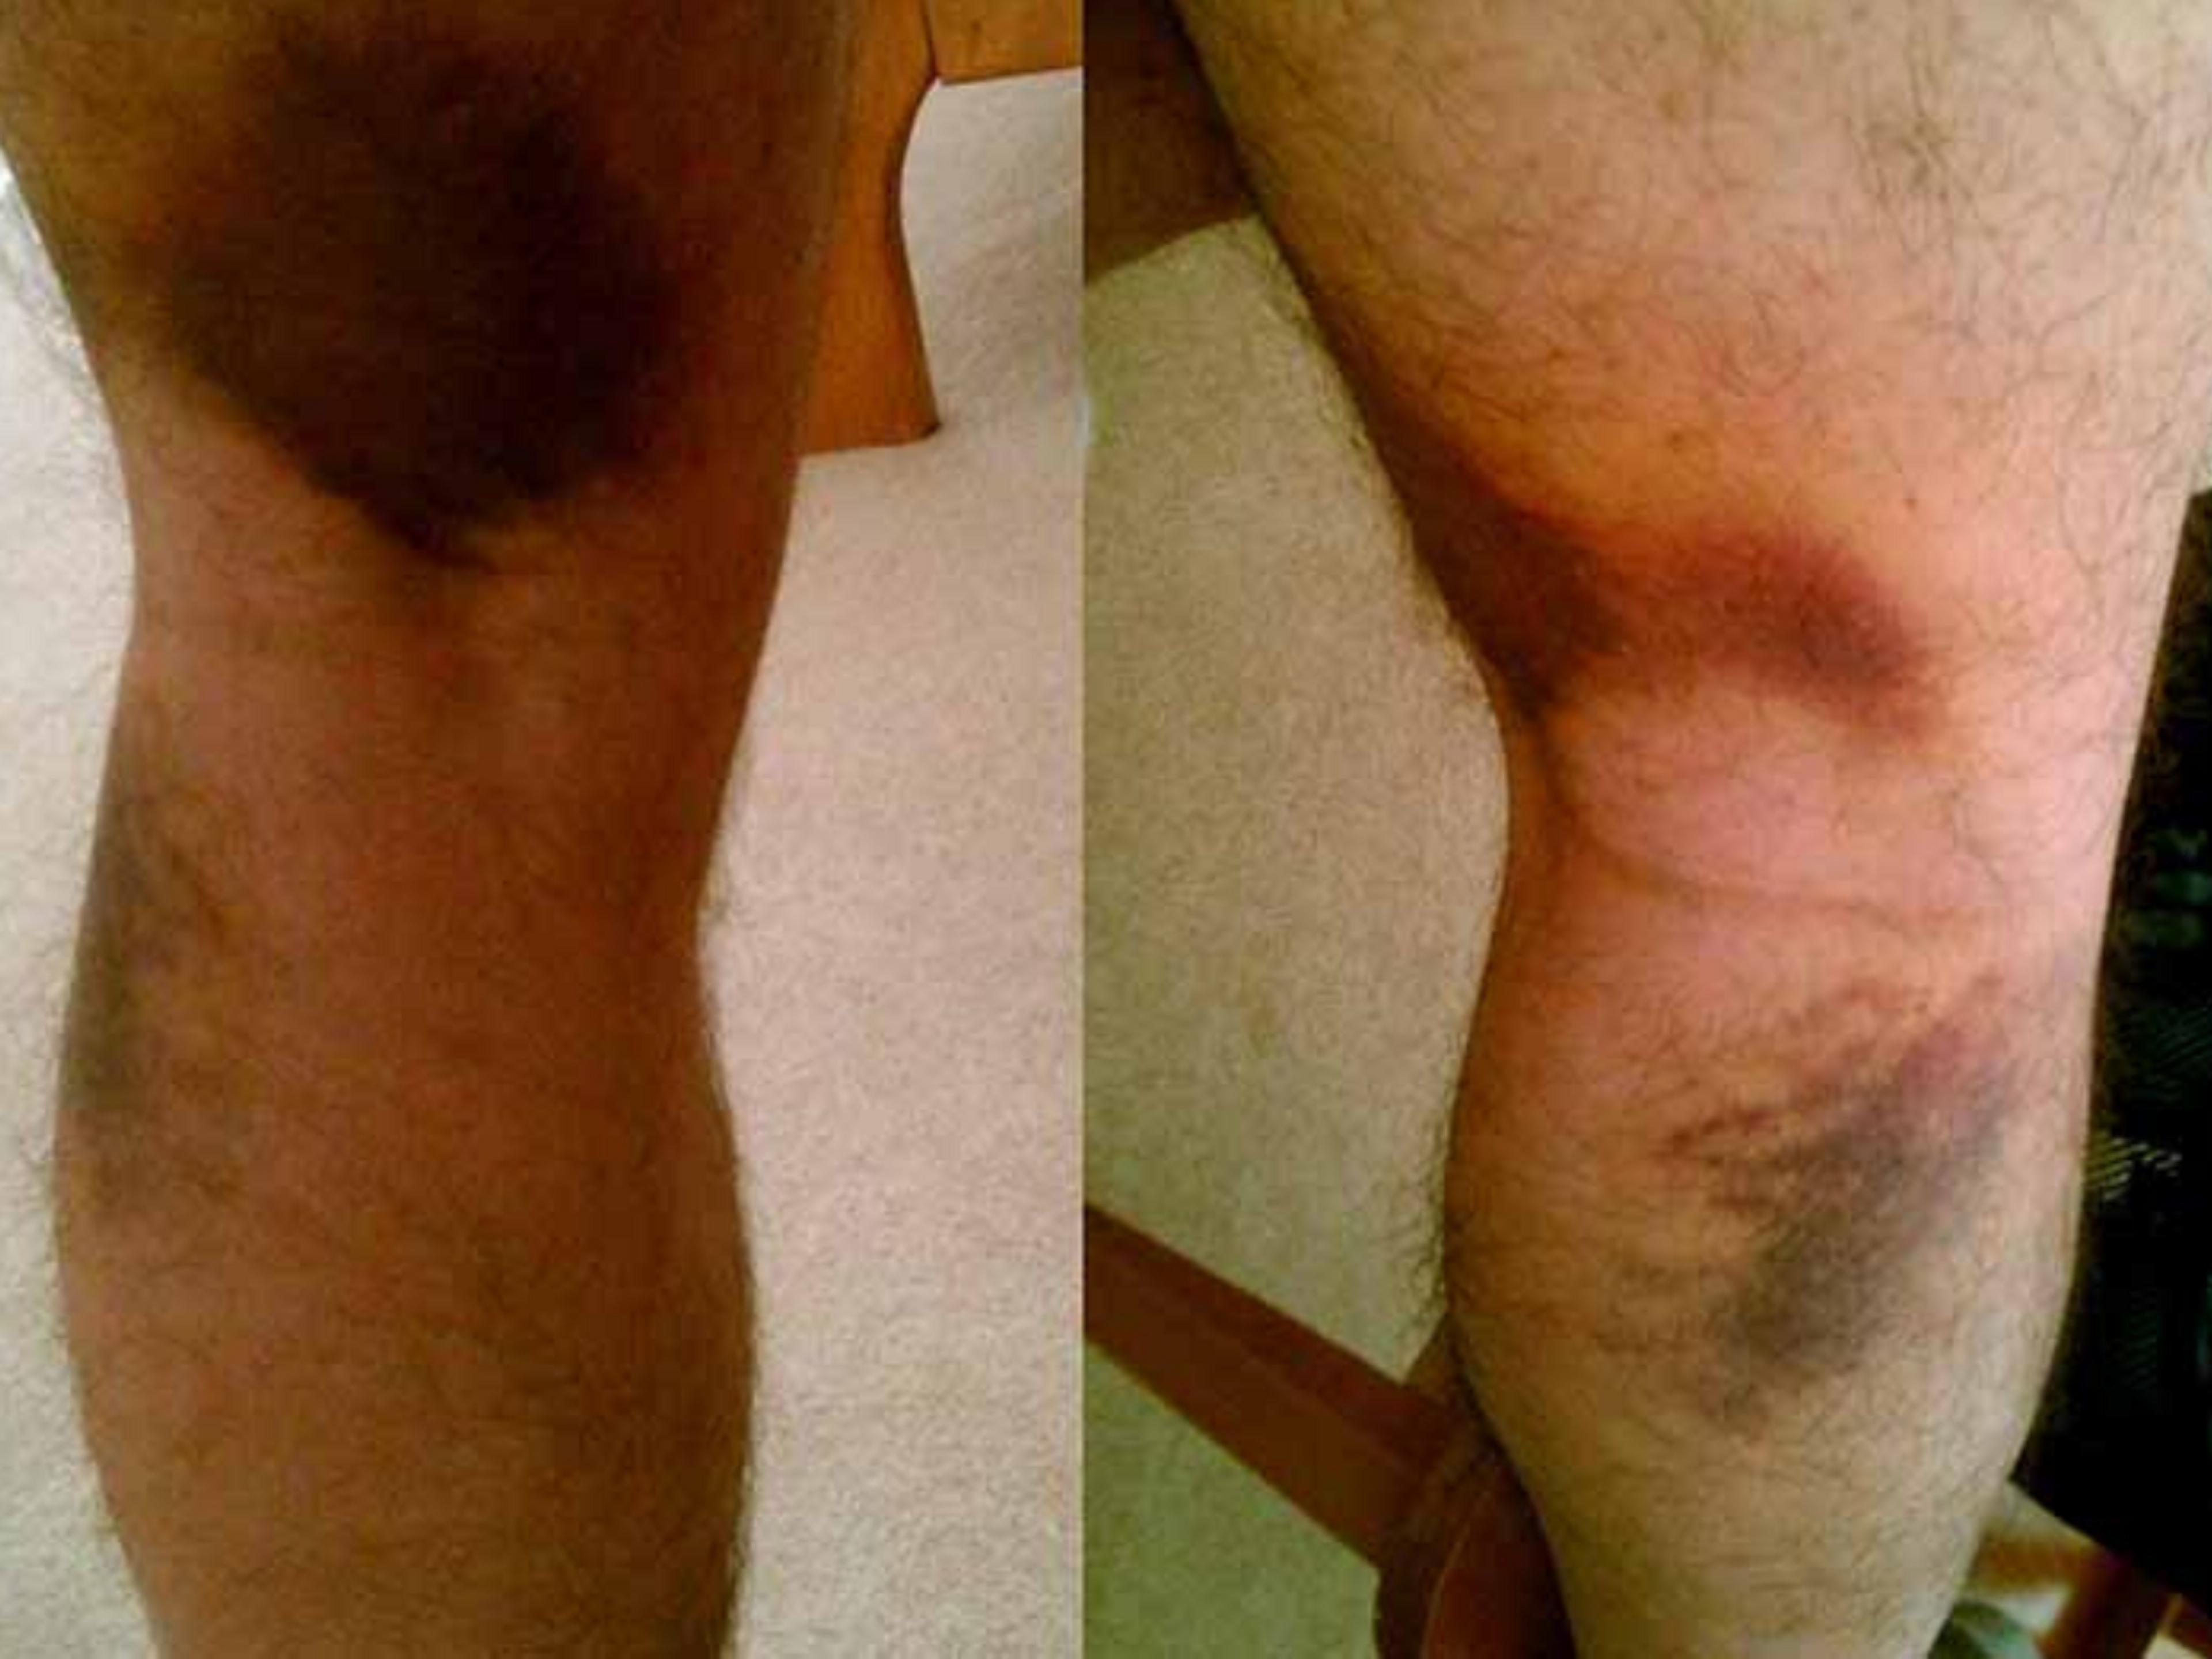 Lorsque vous tirez sur un ischio-jambier, l'hématome apparaît souvent plus bas dans la jambe.